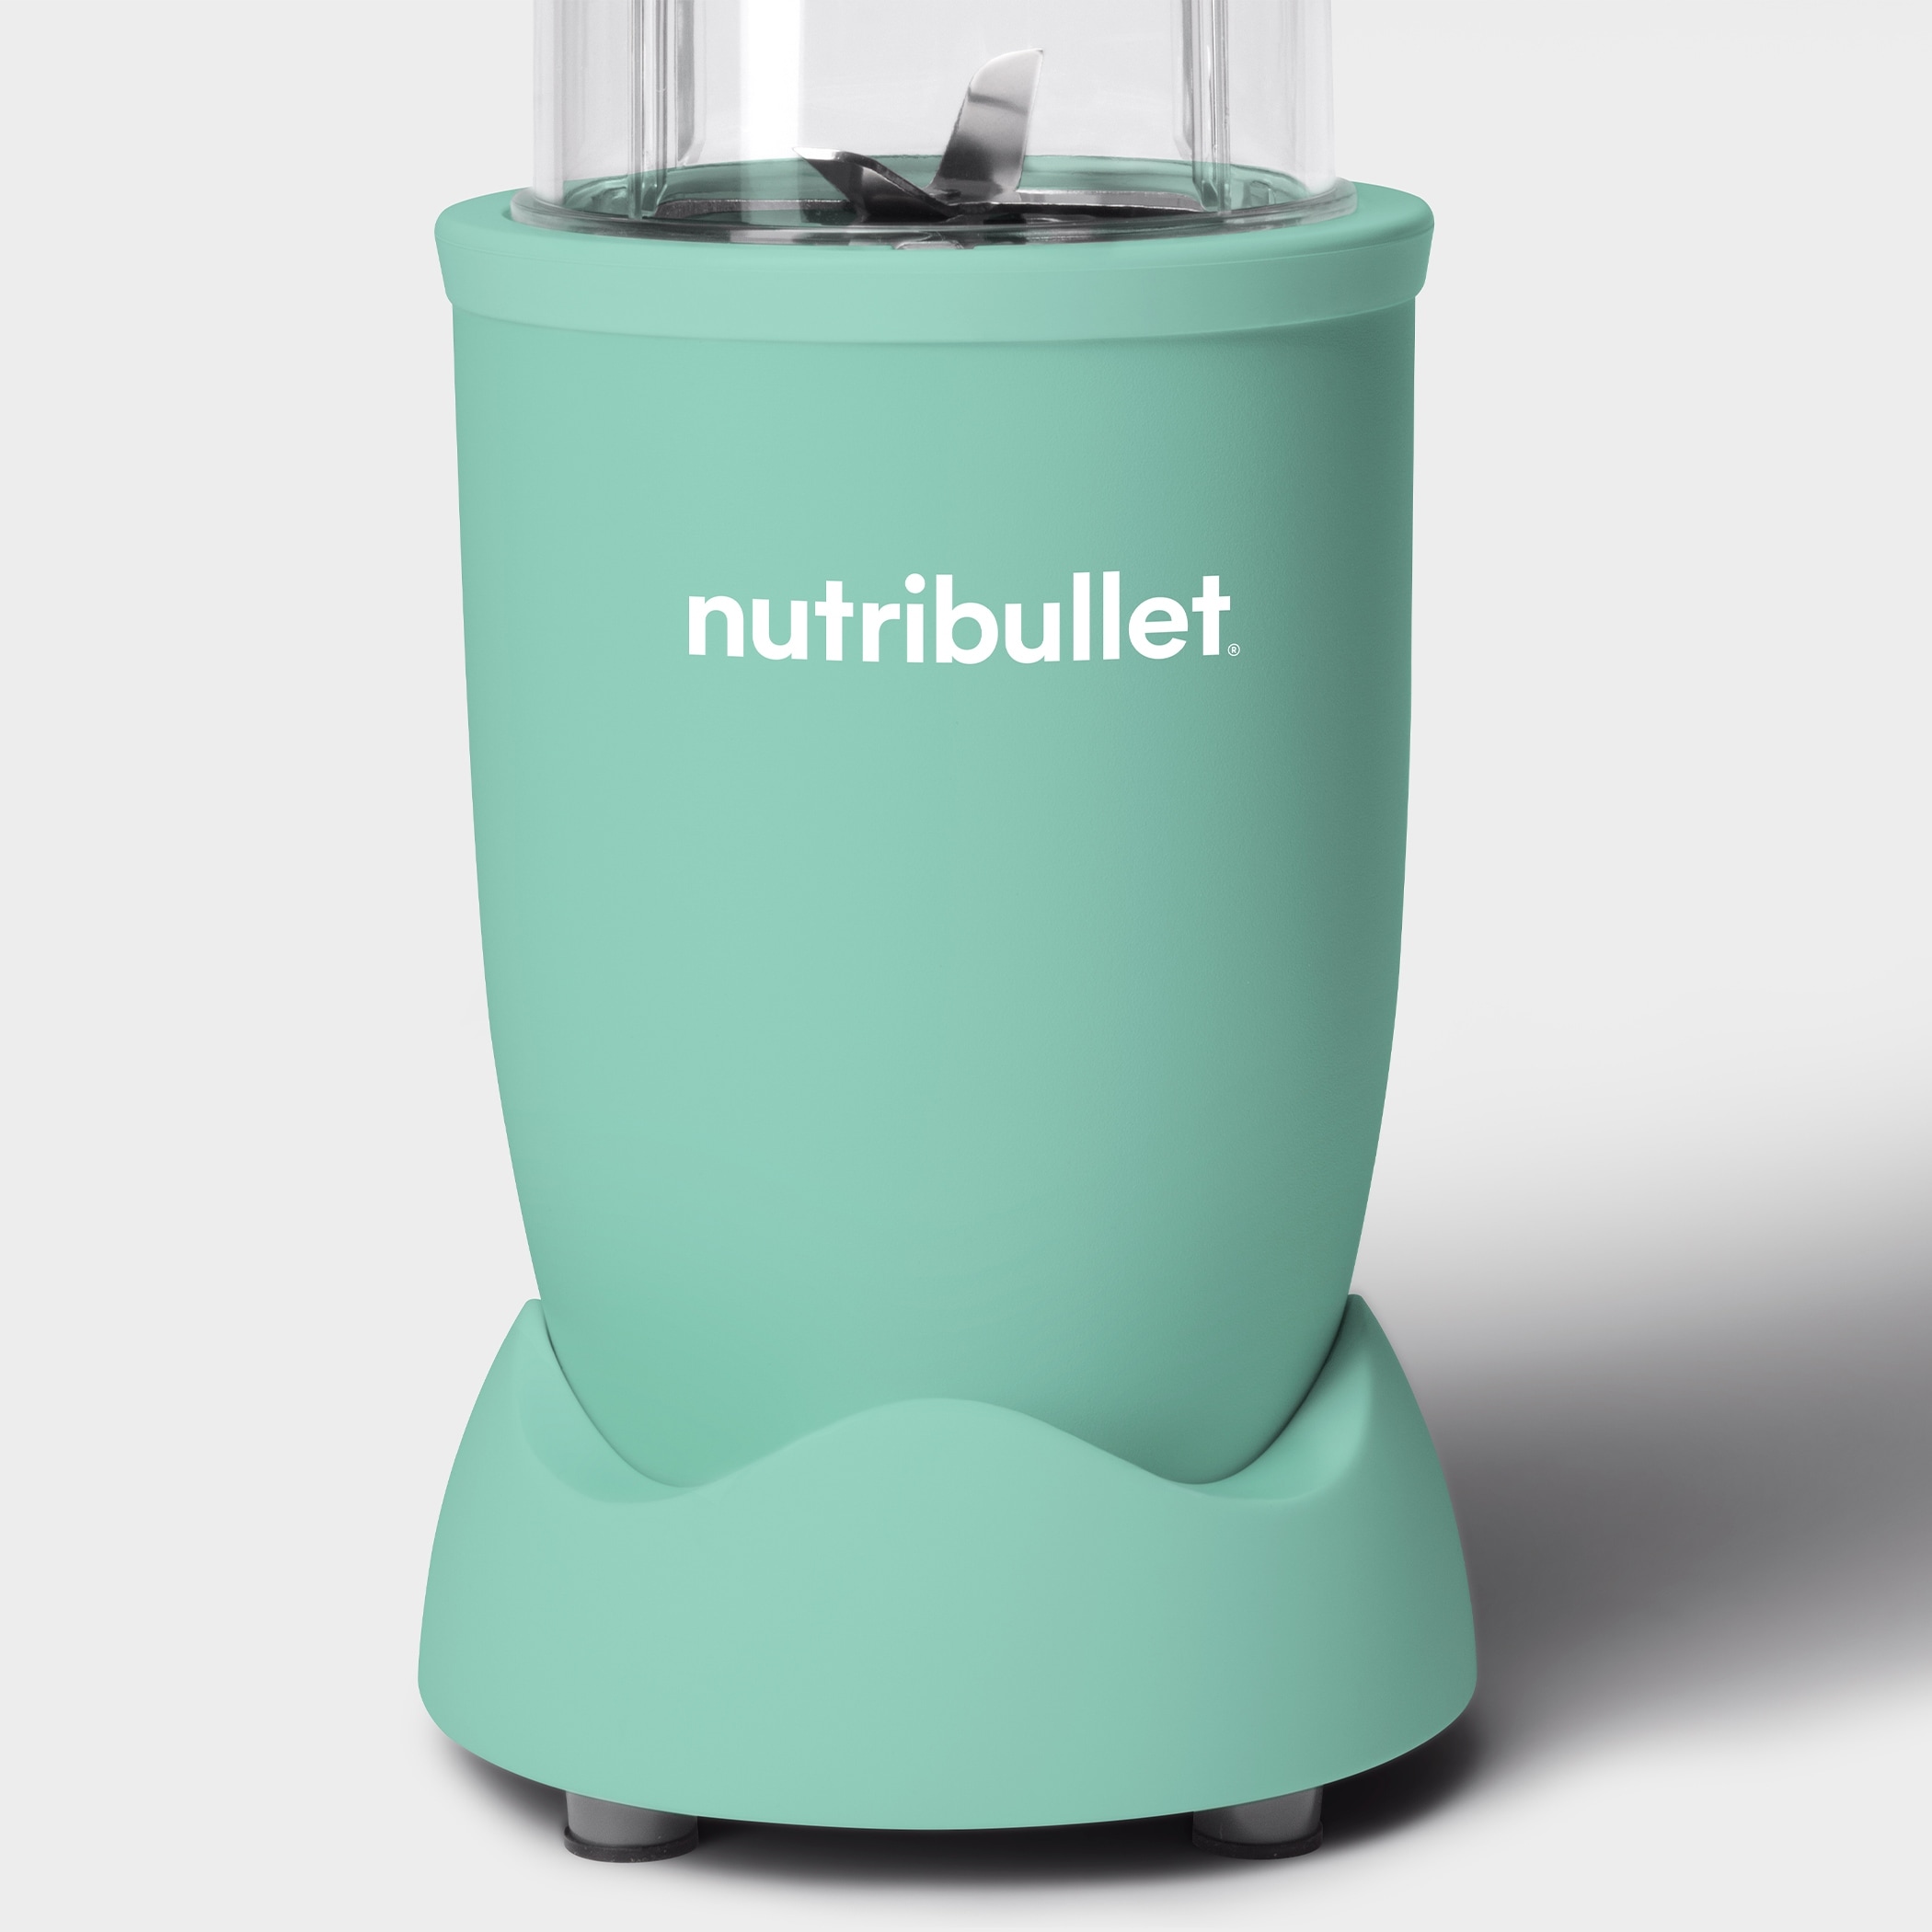 nutribullet Single Serve Blender - On Sale - Bed Bath & Beyond - 36329364